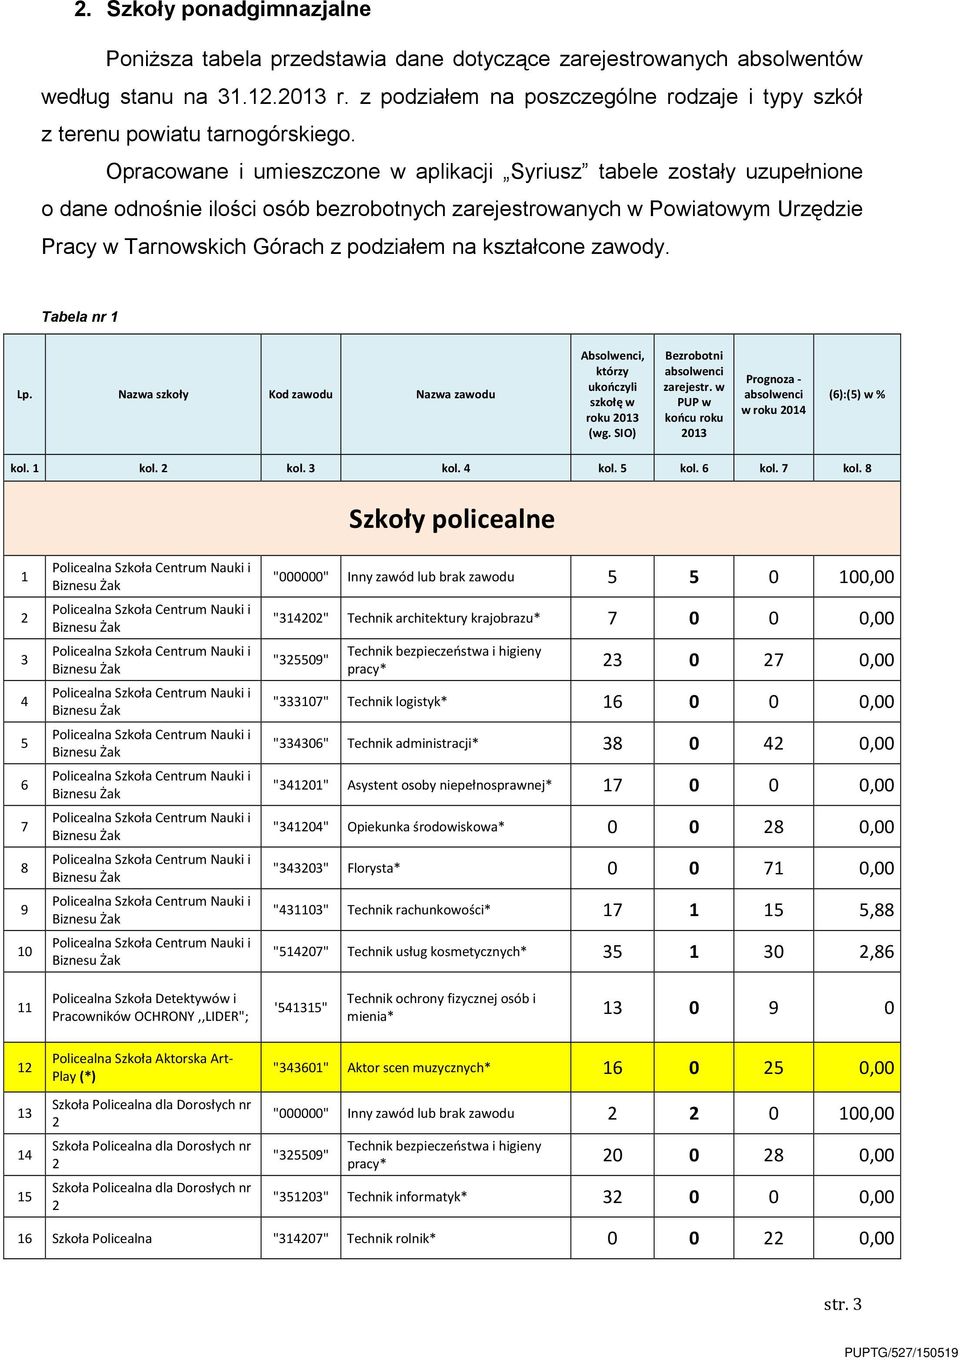 Opracowane i umieszczone w aplikacji Syriusz tabele zostały uzupełnione o dane odnośnie ilości osób bezrobotnych zarejestrowanych w Powiatowym Urzędzie Pracy w Tarnowskich Górach z podziałem na